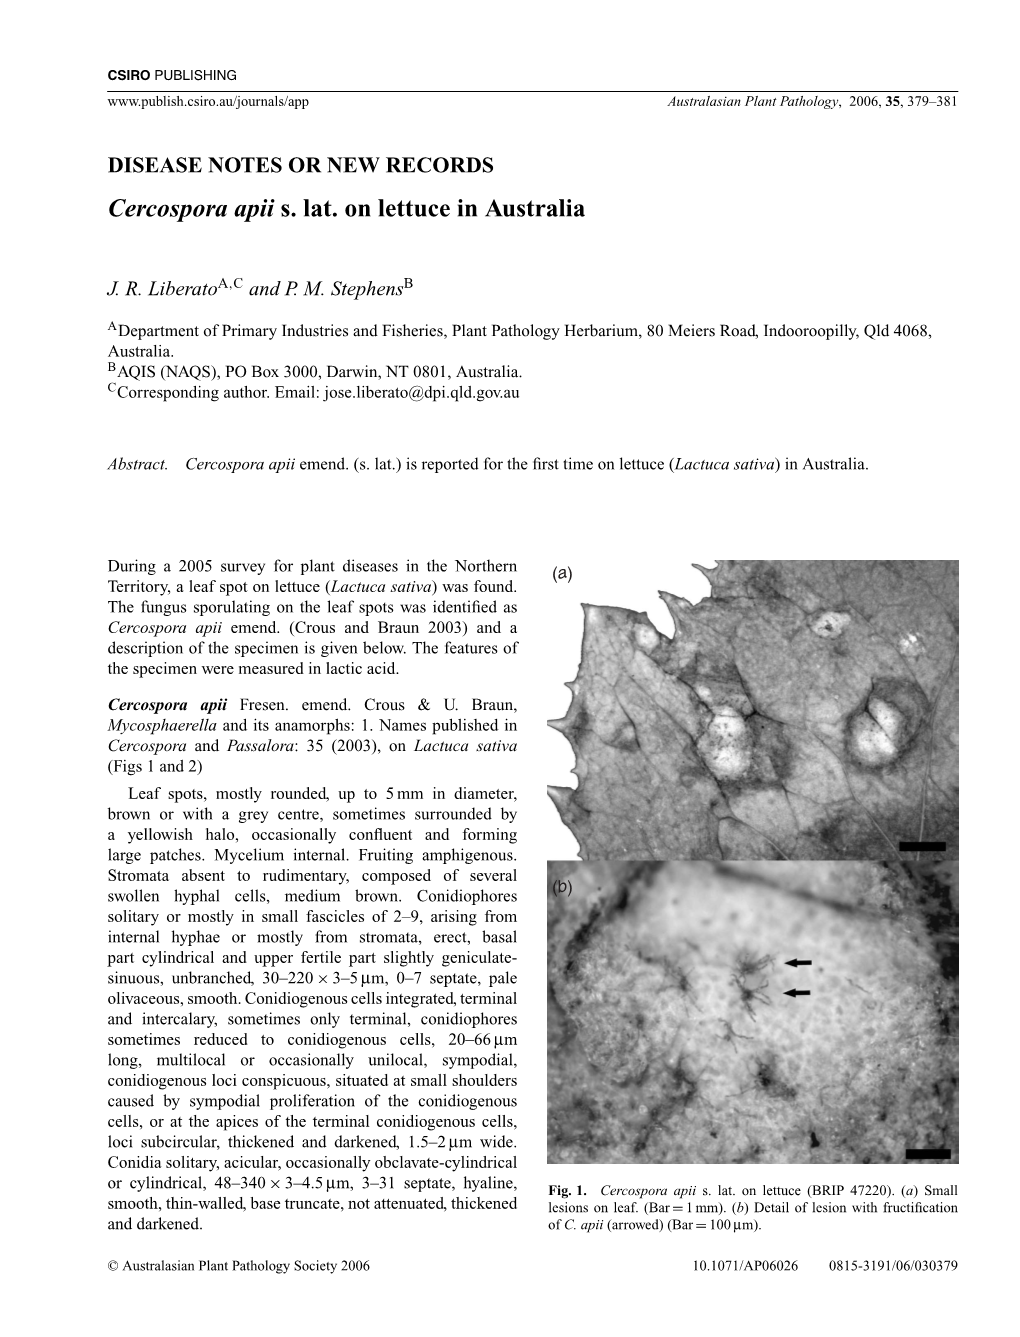 Cercospora Apii S. Lat. on Lettuce in Australia